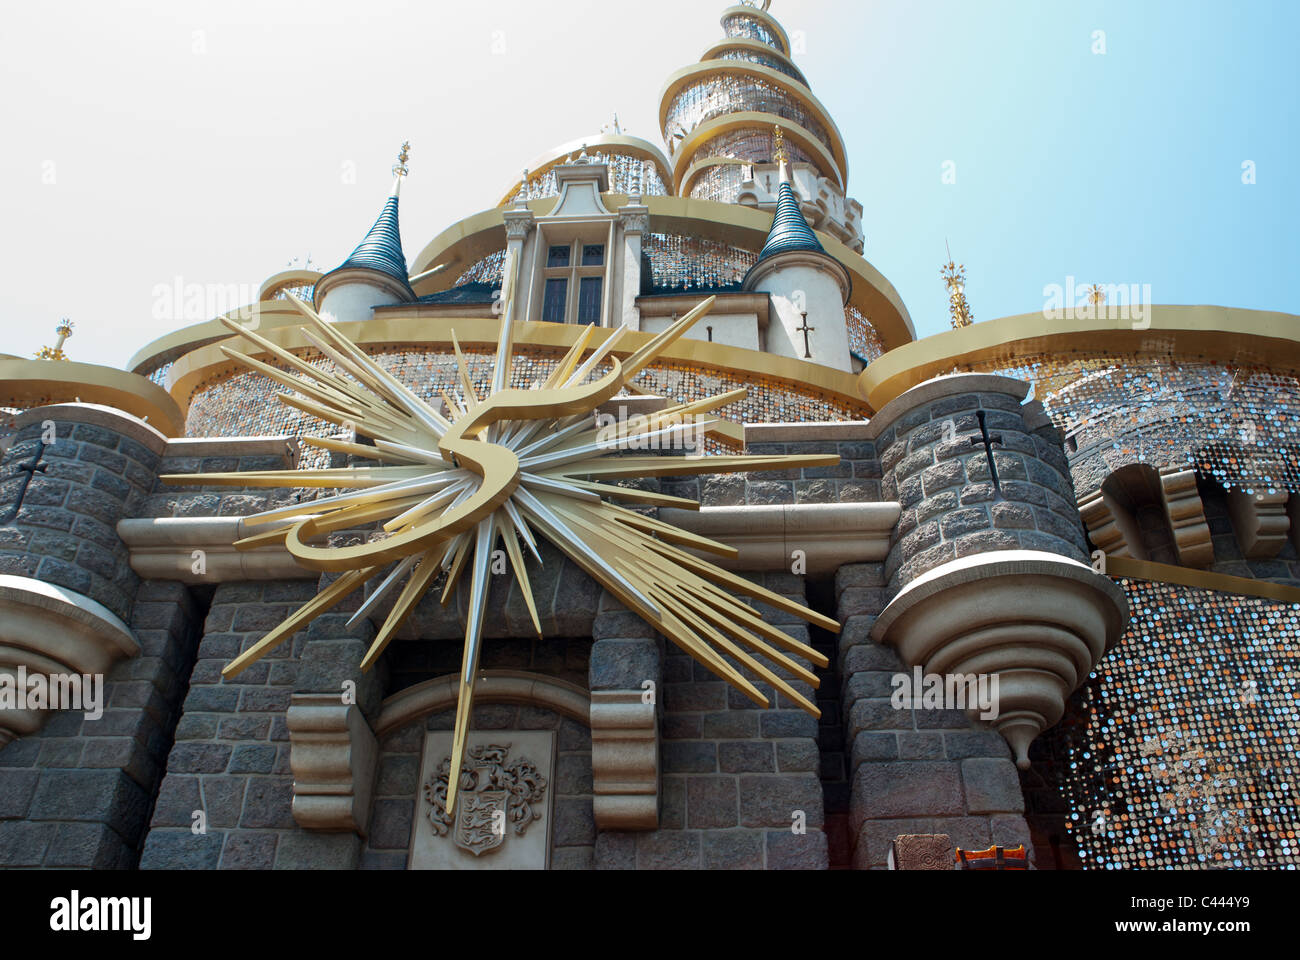 Fünf-Jahr-Jubiläum von Disneyland Hongkong China Asien Stockfoto